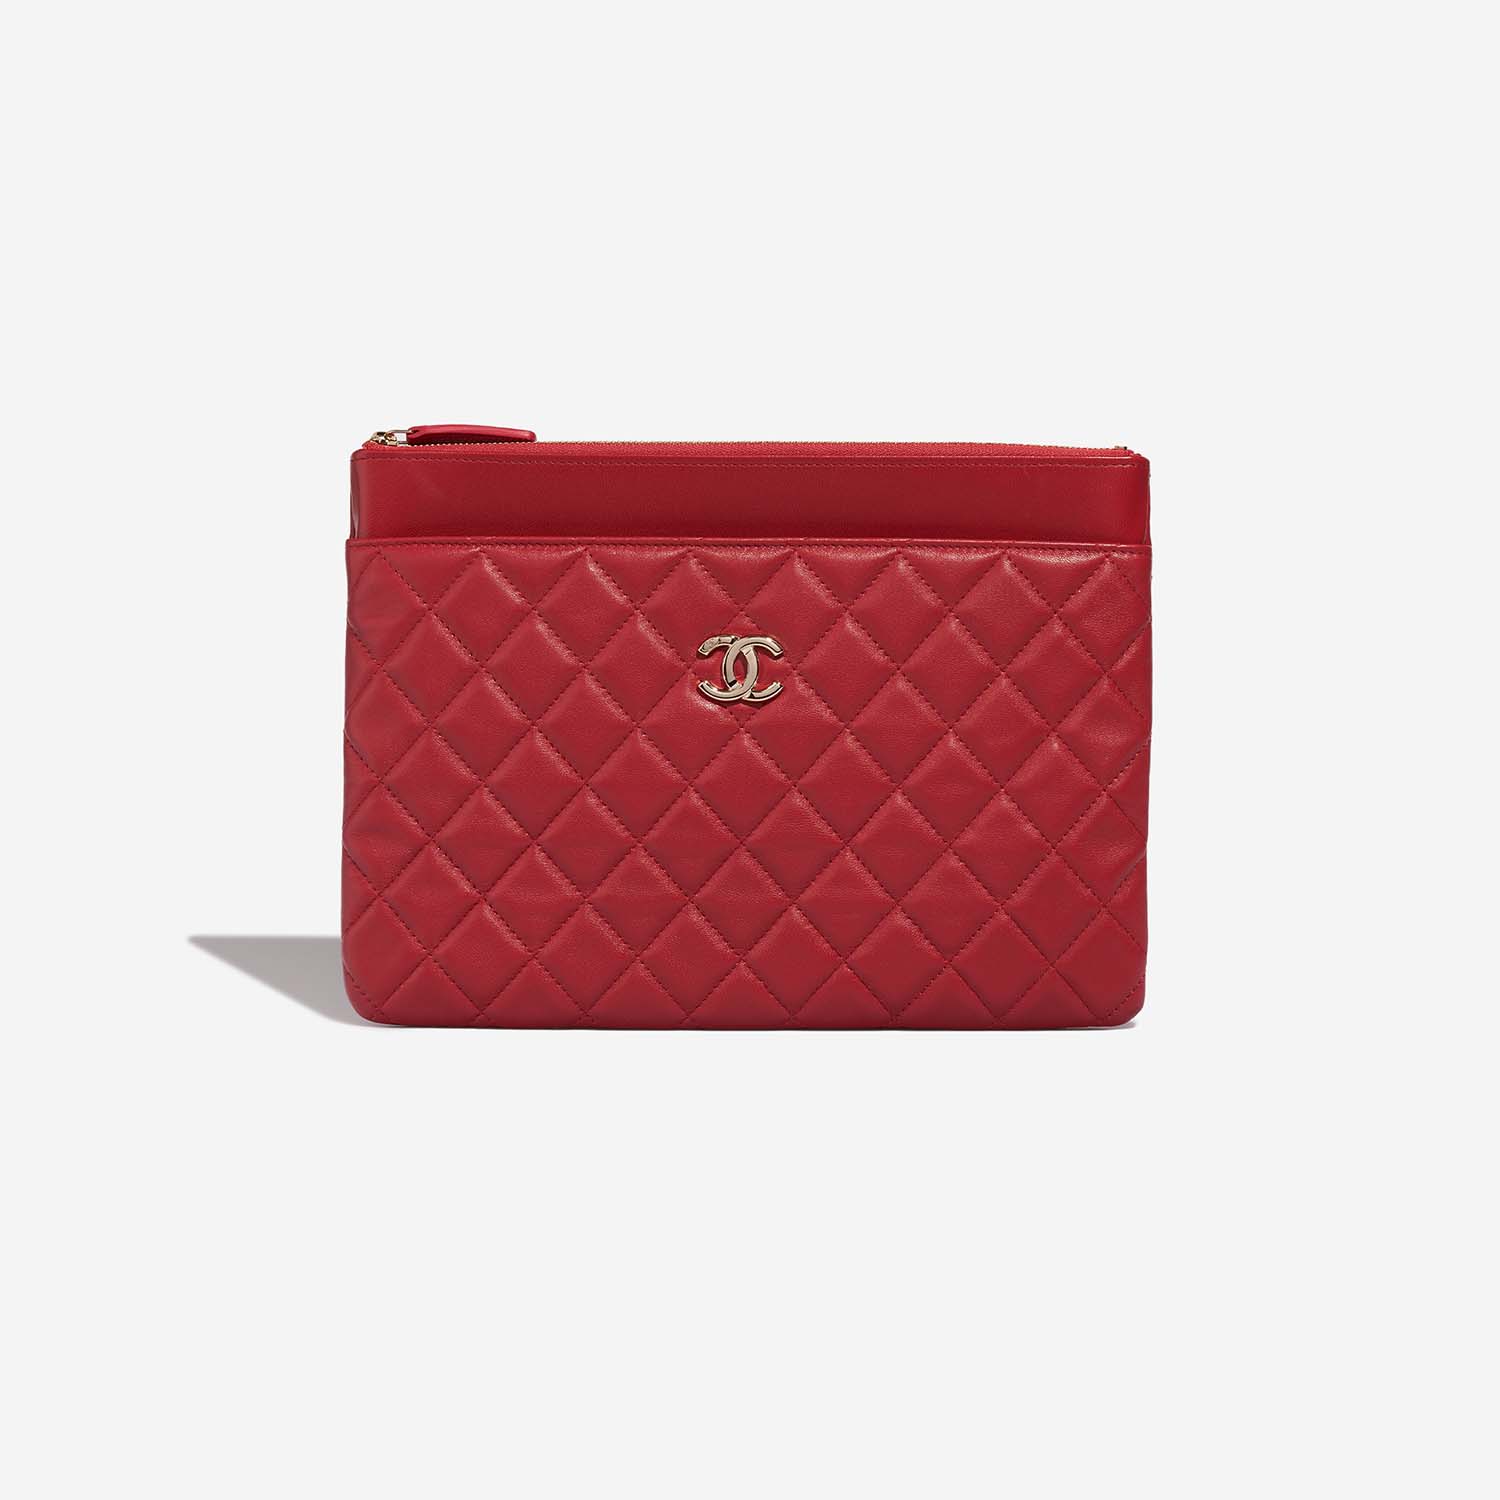 Chanel Timeless Clutch Rot 2FS | Verkaufen Sie Ihre Designertasche auf Saclab.com